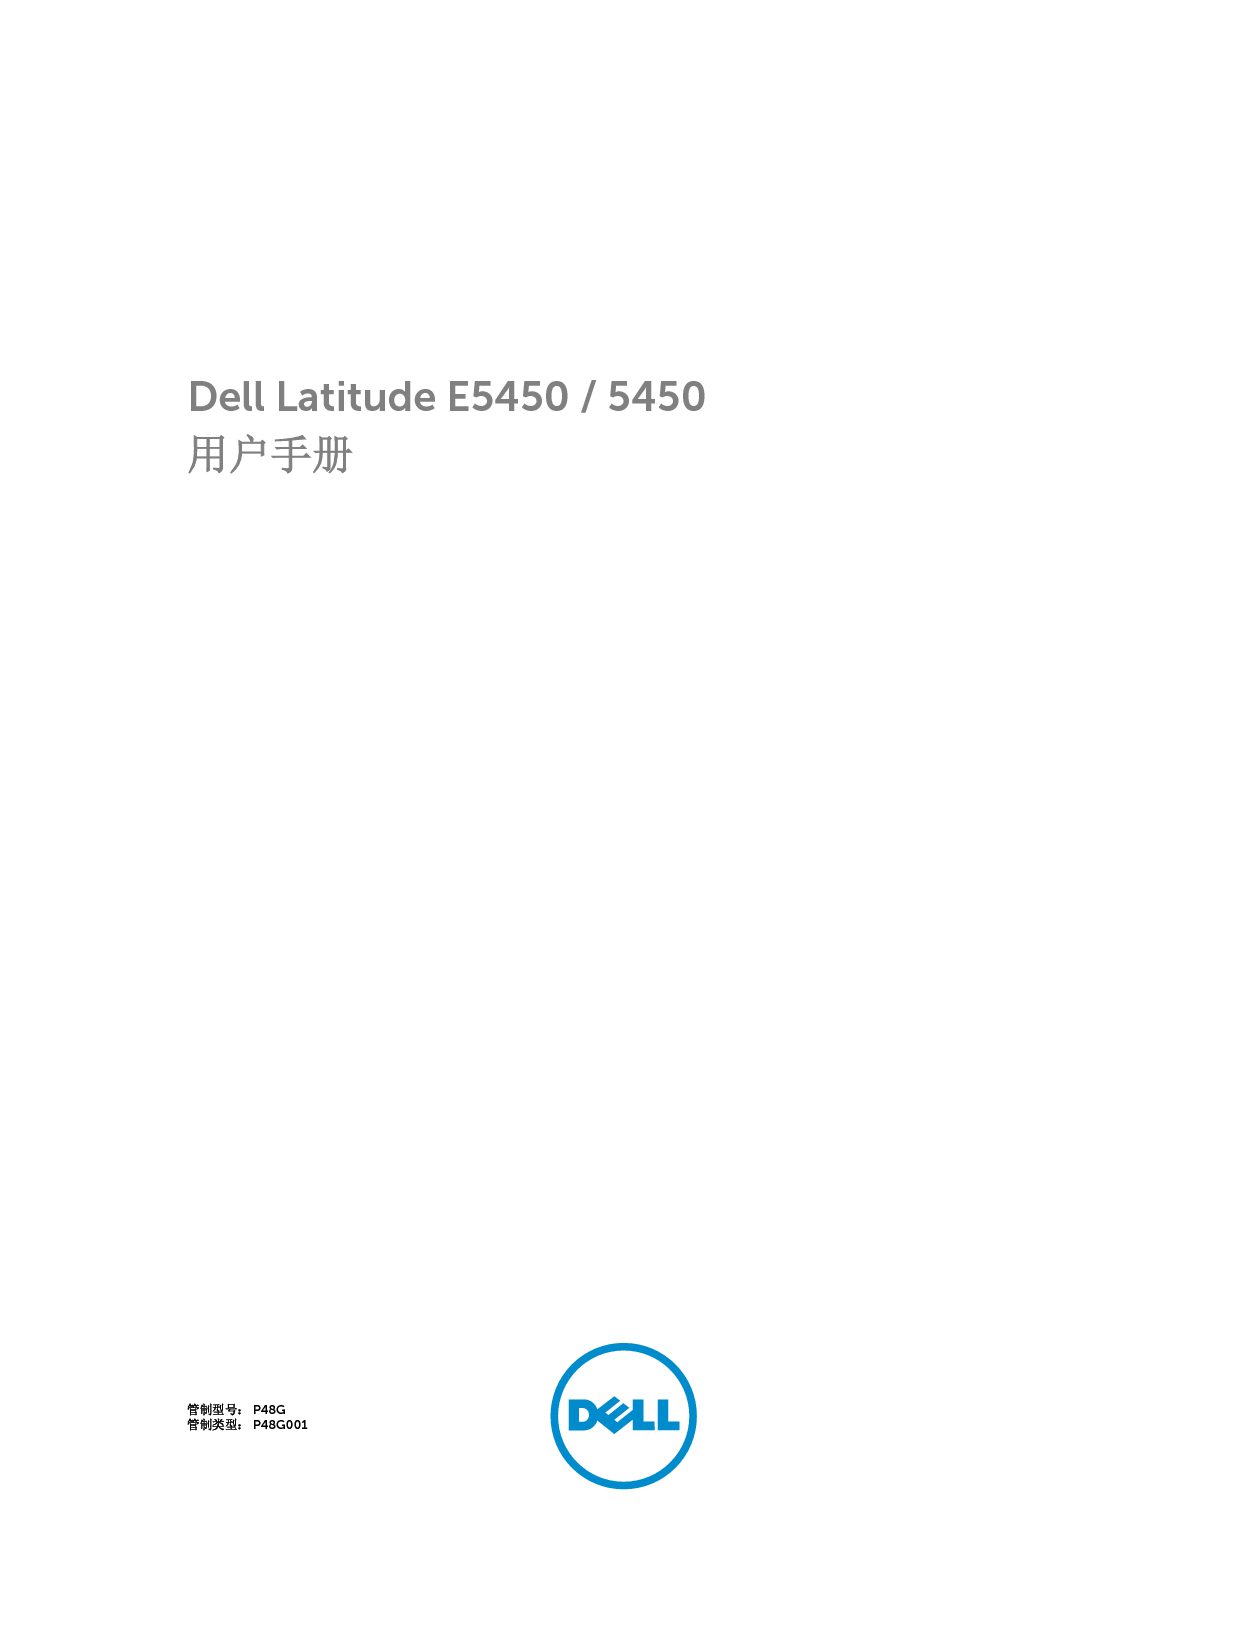 戴尔 Dell Latitude 5450 用户手册 封面